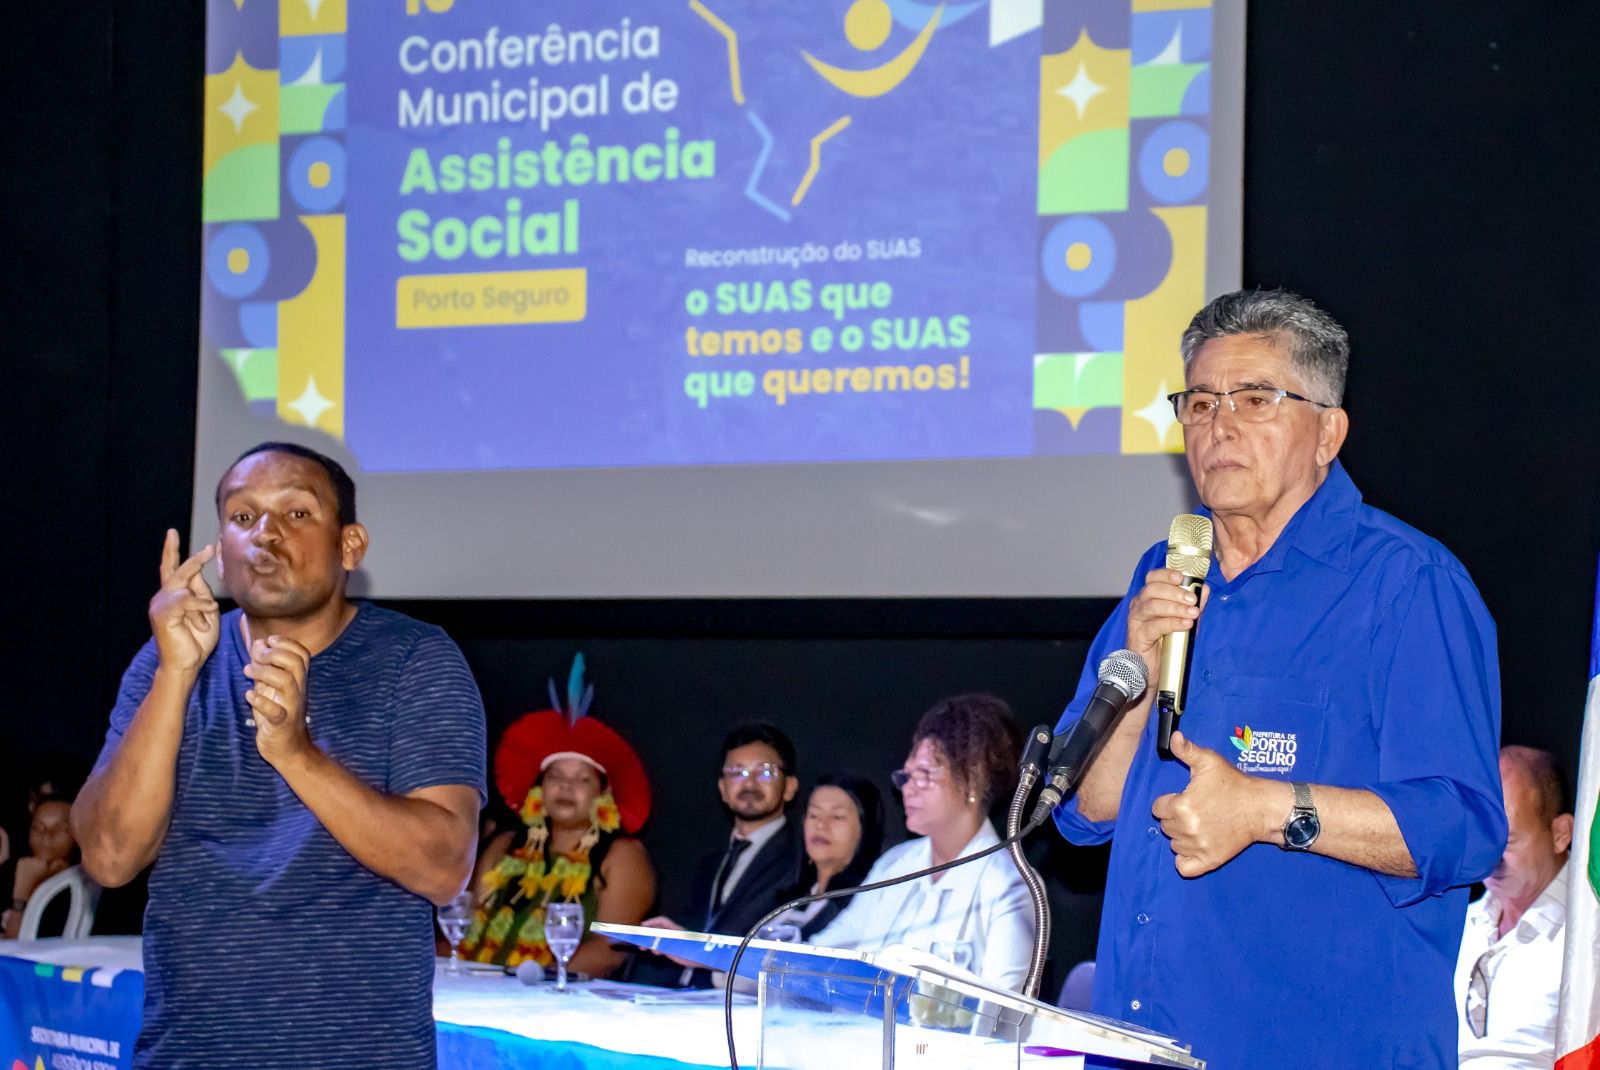 Conferência Municipal de Assistência Social reúne mais de 500 participantes 67